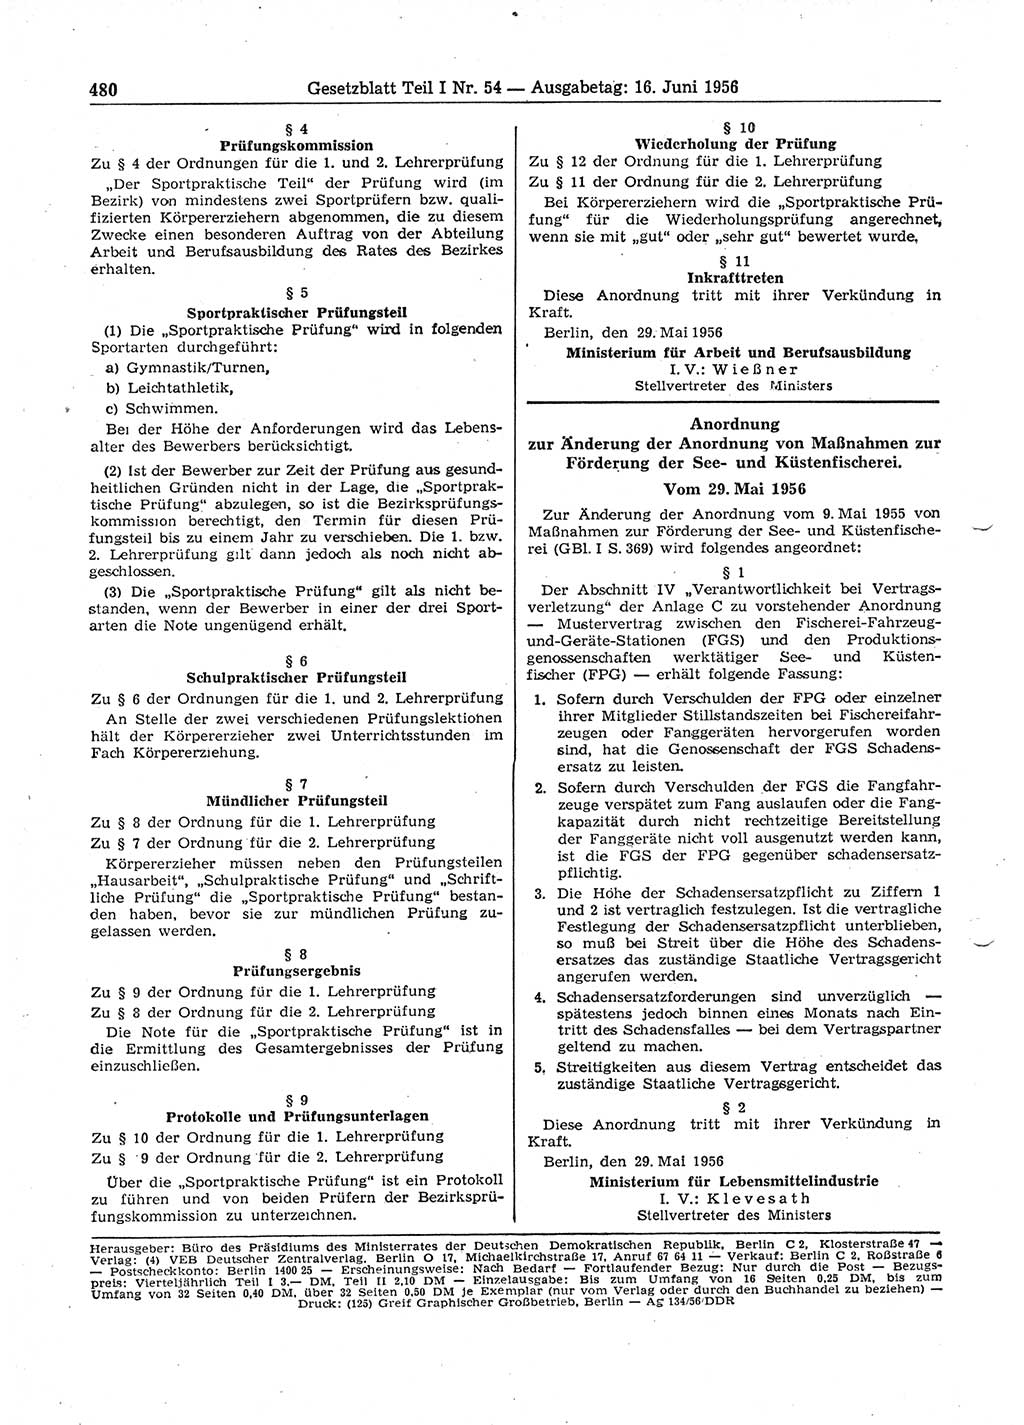 Gesetzblatt (GBl.) der Deutschen Demokratischen Republik (DDR) Teil Ⅰ 1956, Seite 480 (GBl. DDR Ⅰ 1956, S. 480)